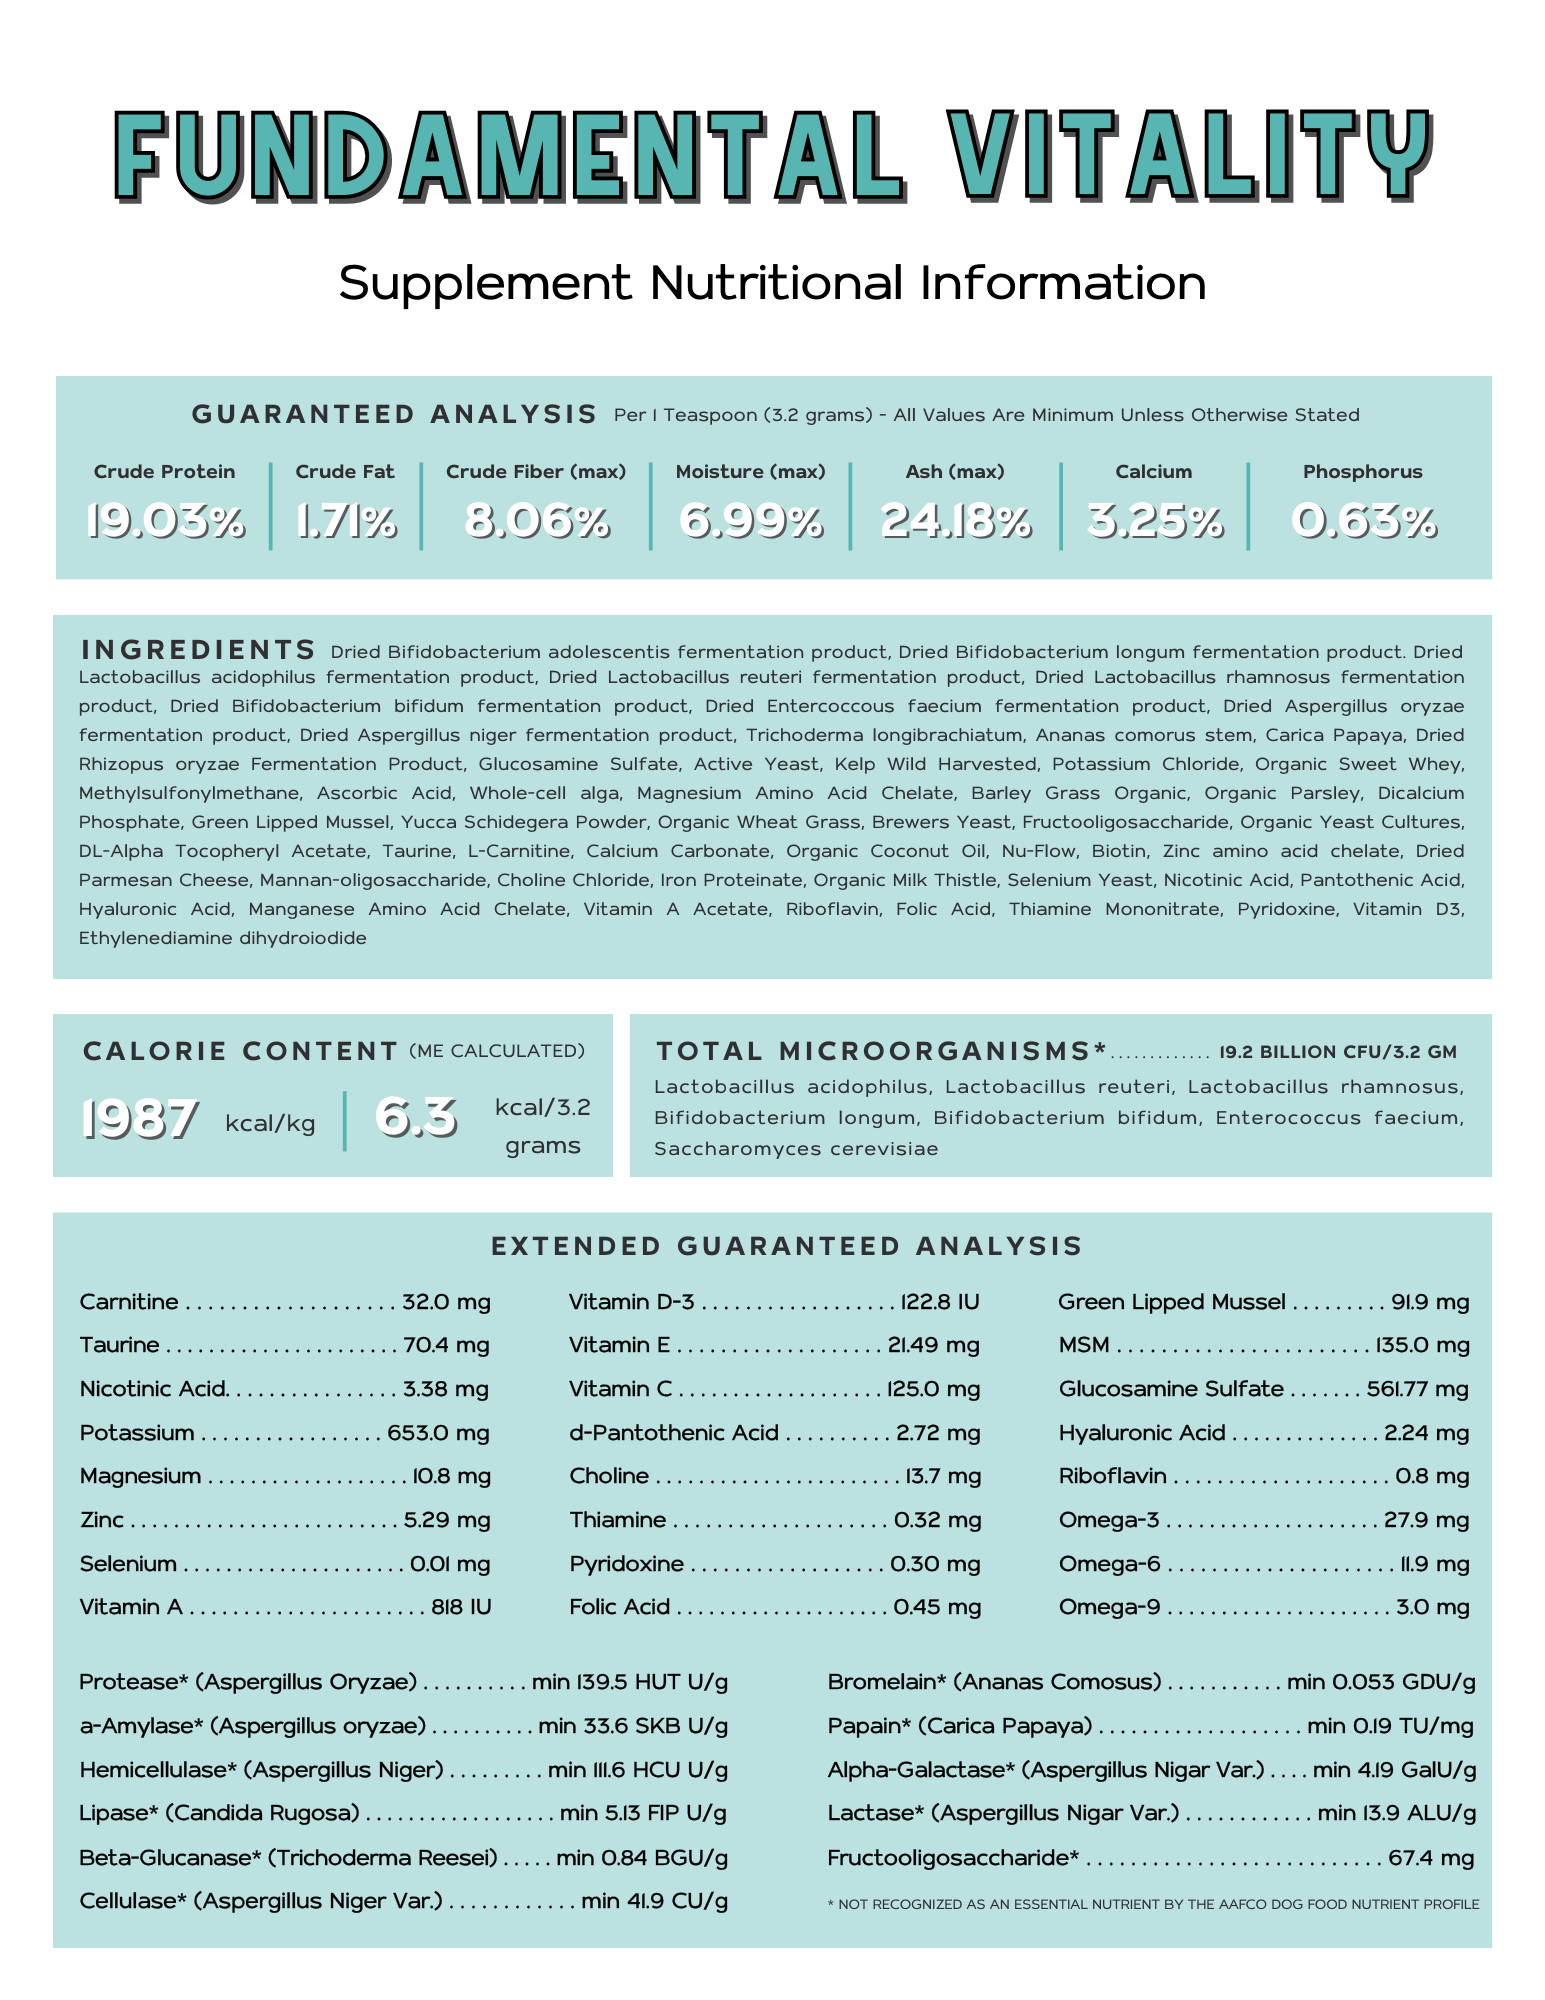 Fundamental Vitality multivitamin nutritional information flyer.